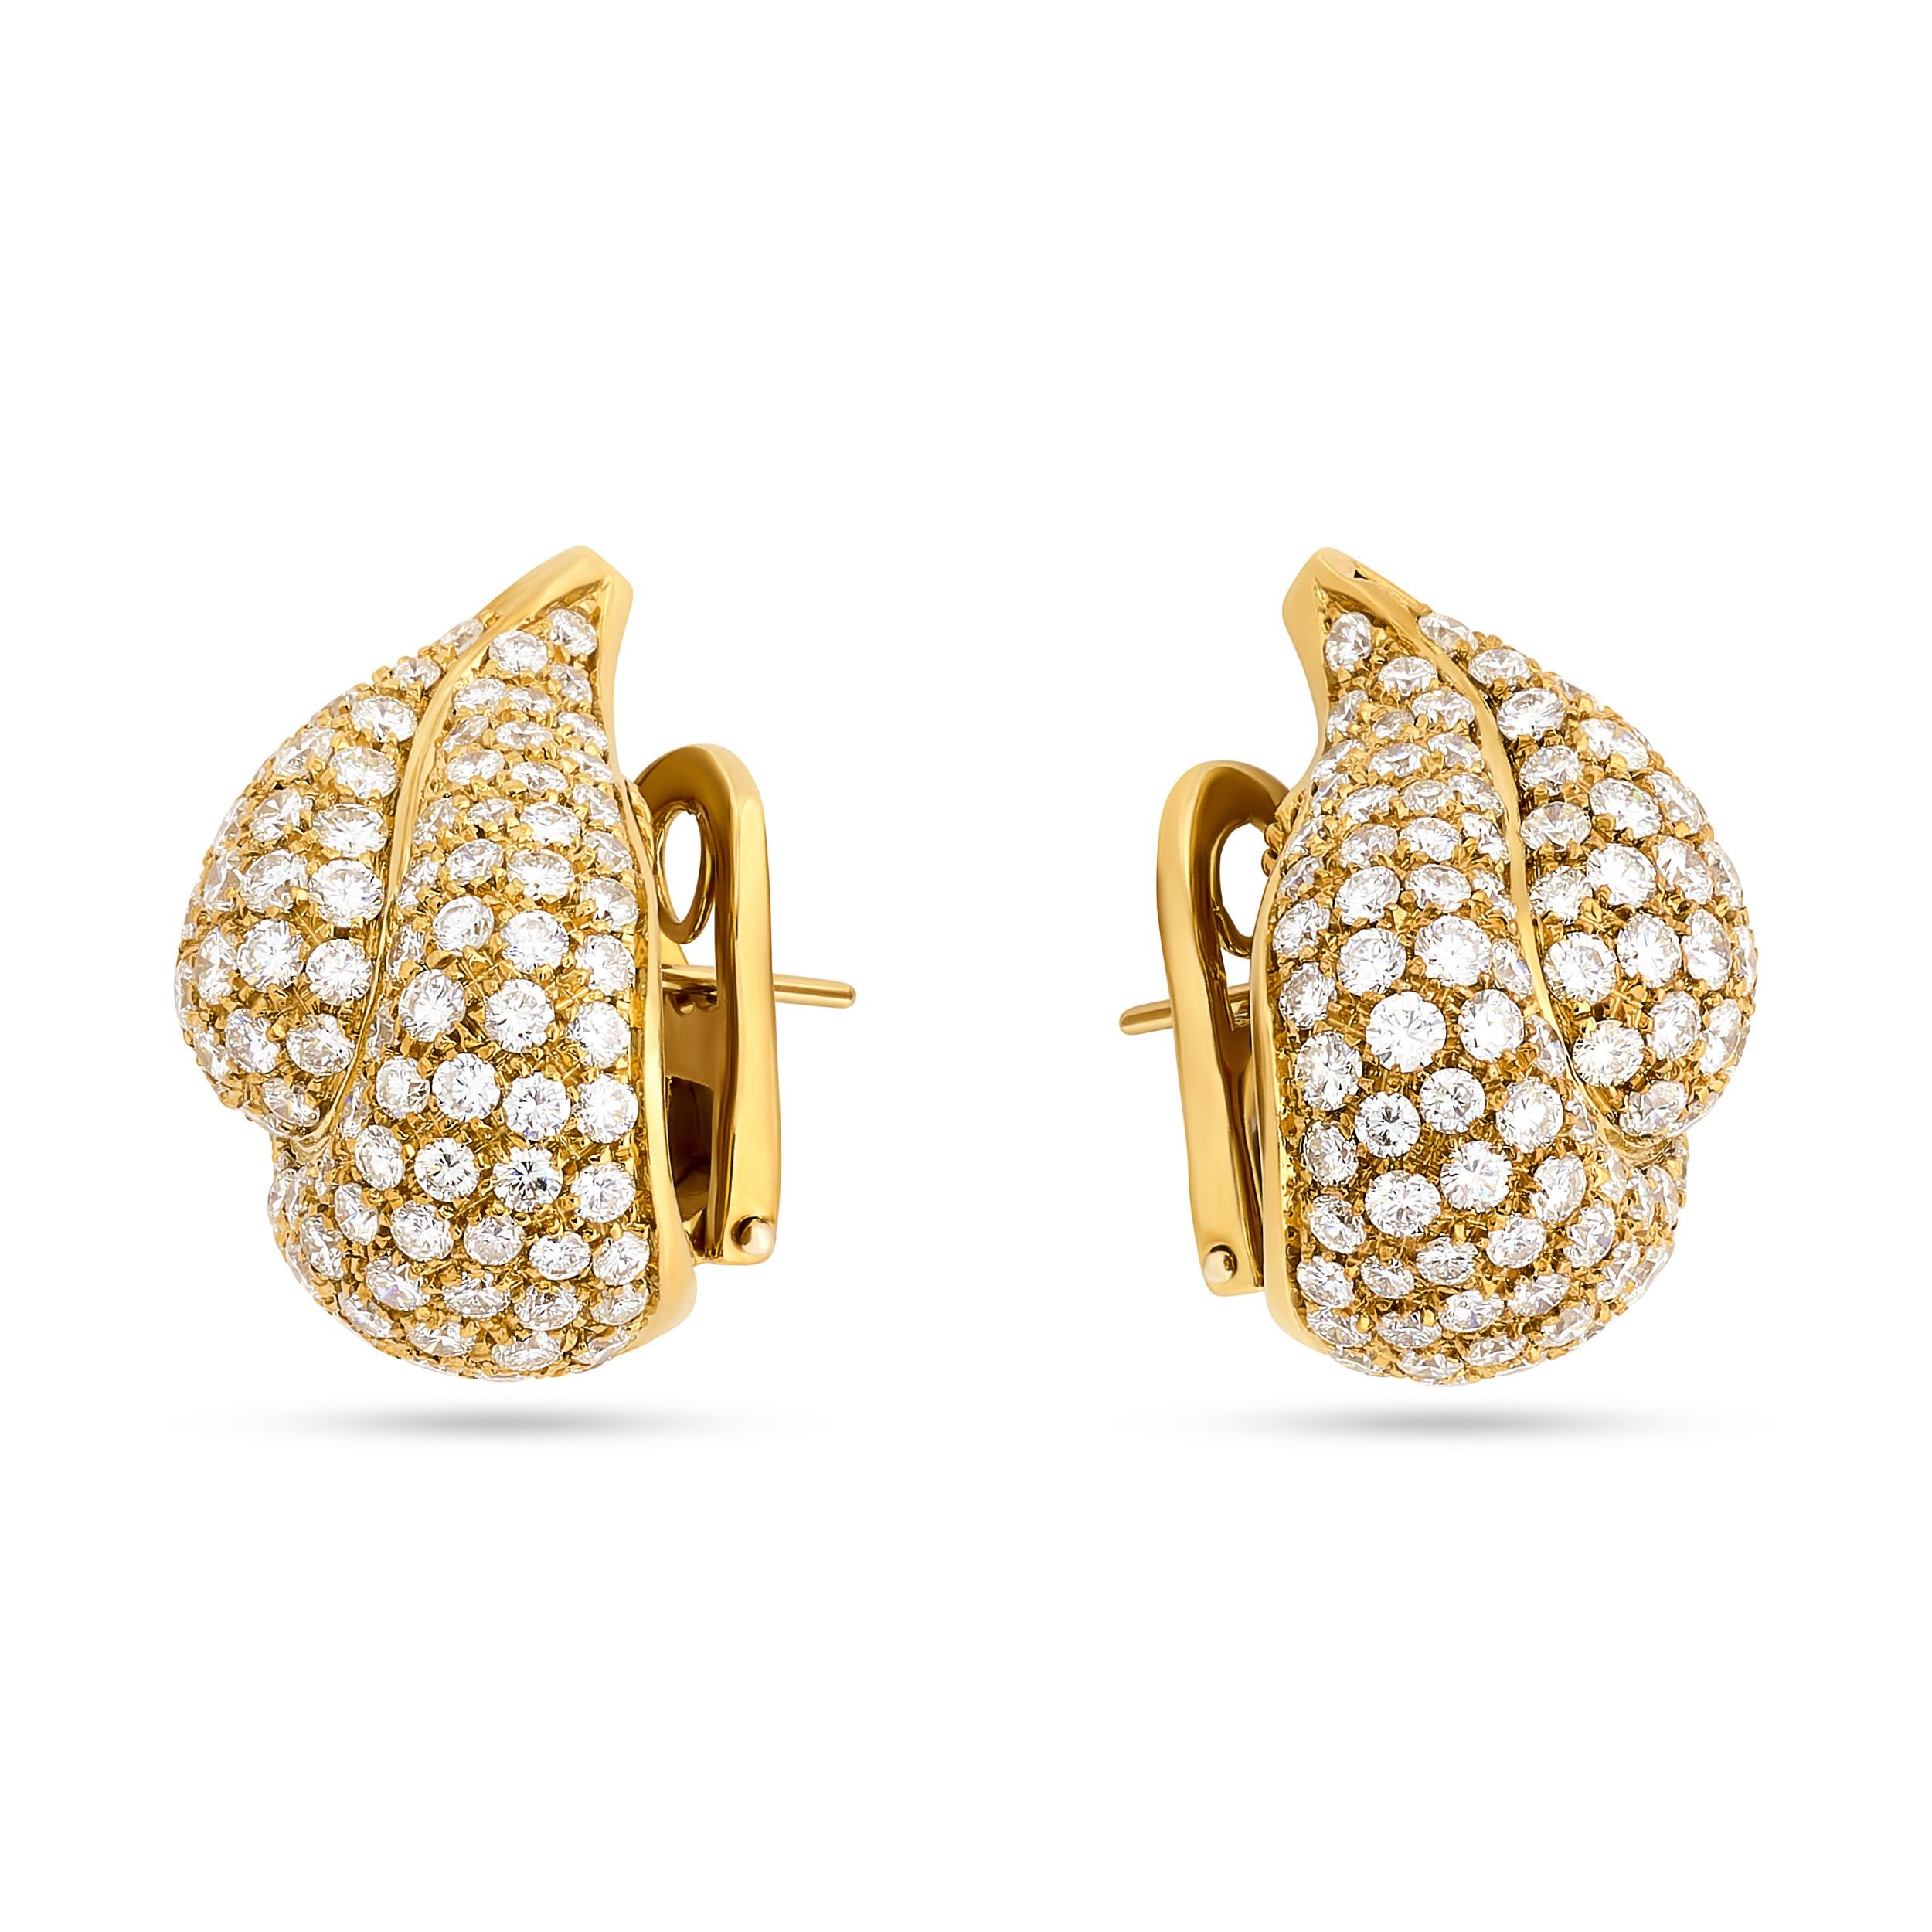 Ces boucles d'oreilles Tiffany & Co. en forme de paillasson sont serties de diamants pavés et d'une rangée audacieuse de rubis ravissants. 

Il y a 22 rubis carrés qui pèsent environ 4,50 carats.
Il y a environ 206 diamants ronds qui pèsent environ